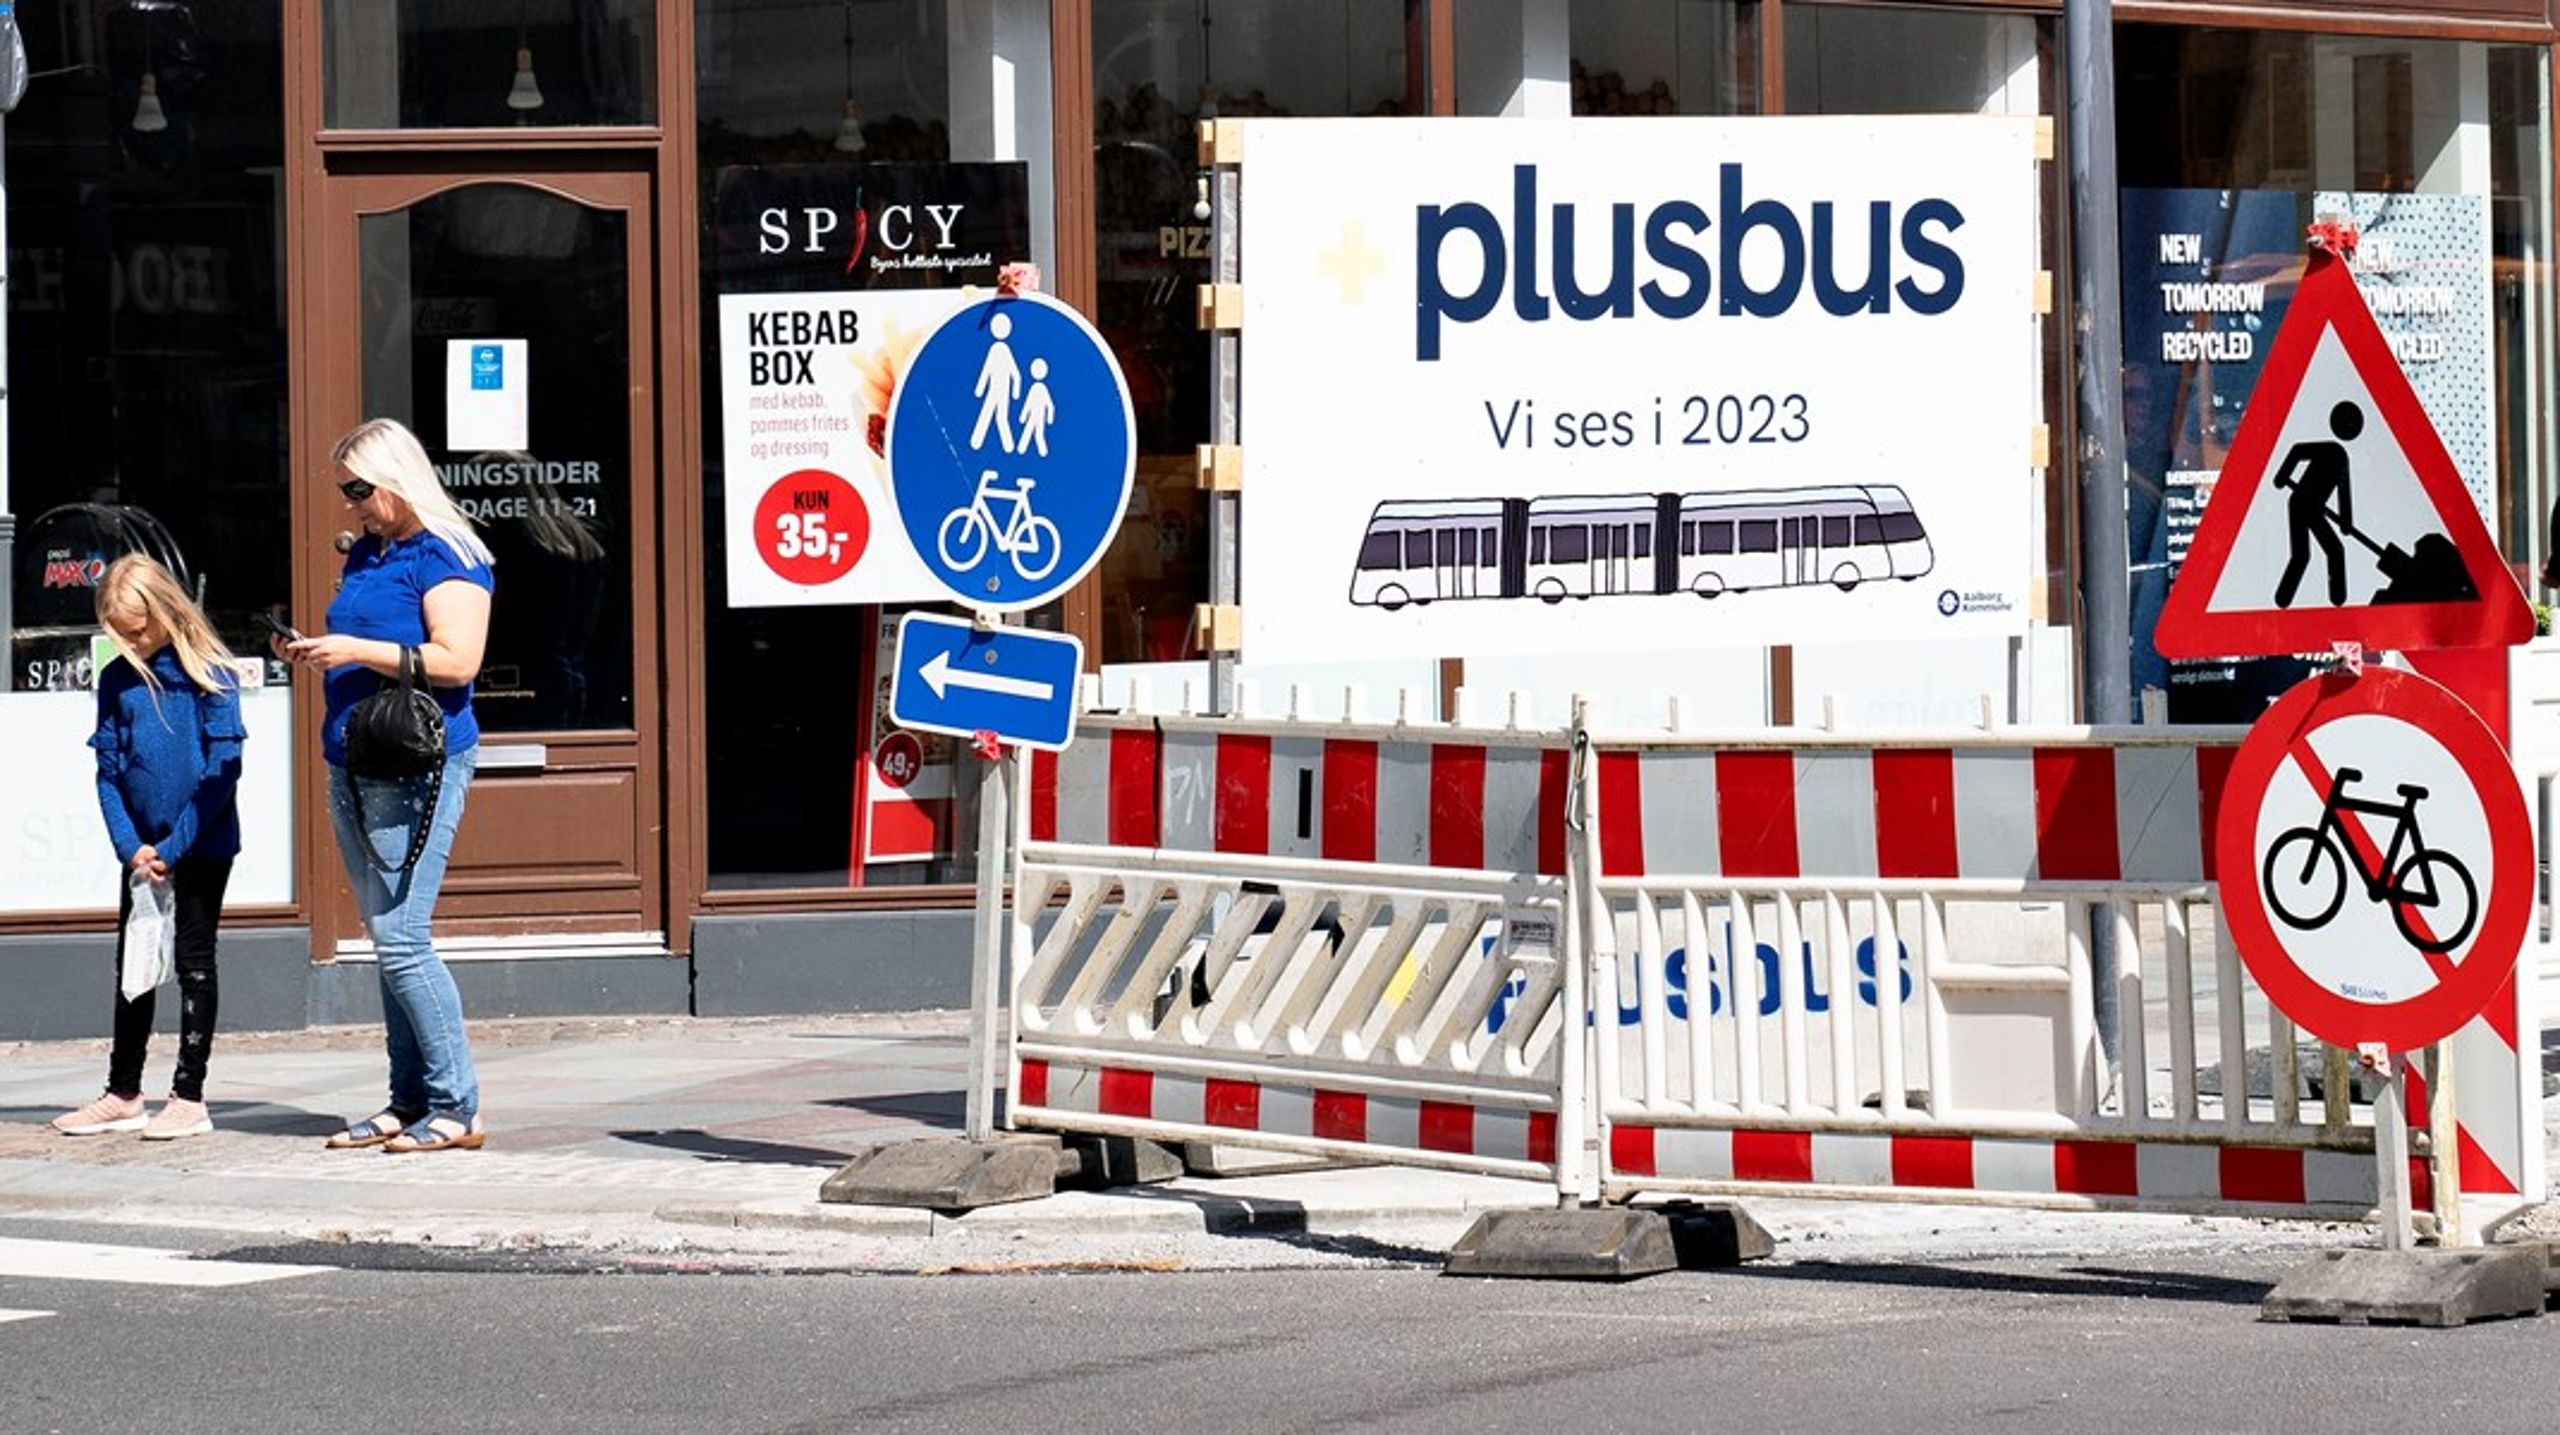 I Aalborg er der for nyligt blevet indsat BRT – Bus Rapid Transit – der er elektriske busser på knap 25 meter, der i eget spor kommer hurtigt og trængselsfrit frem i trafikken.
Borgerne har taget godt imod BRT'en, skriver Anders G. Christensen (V).